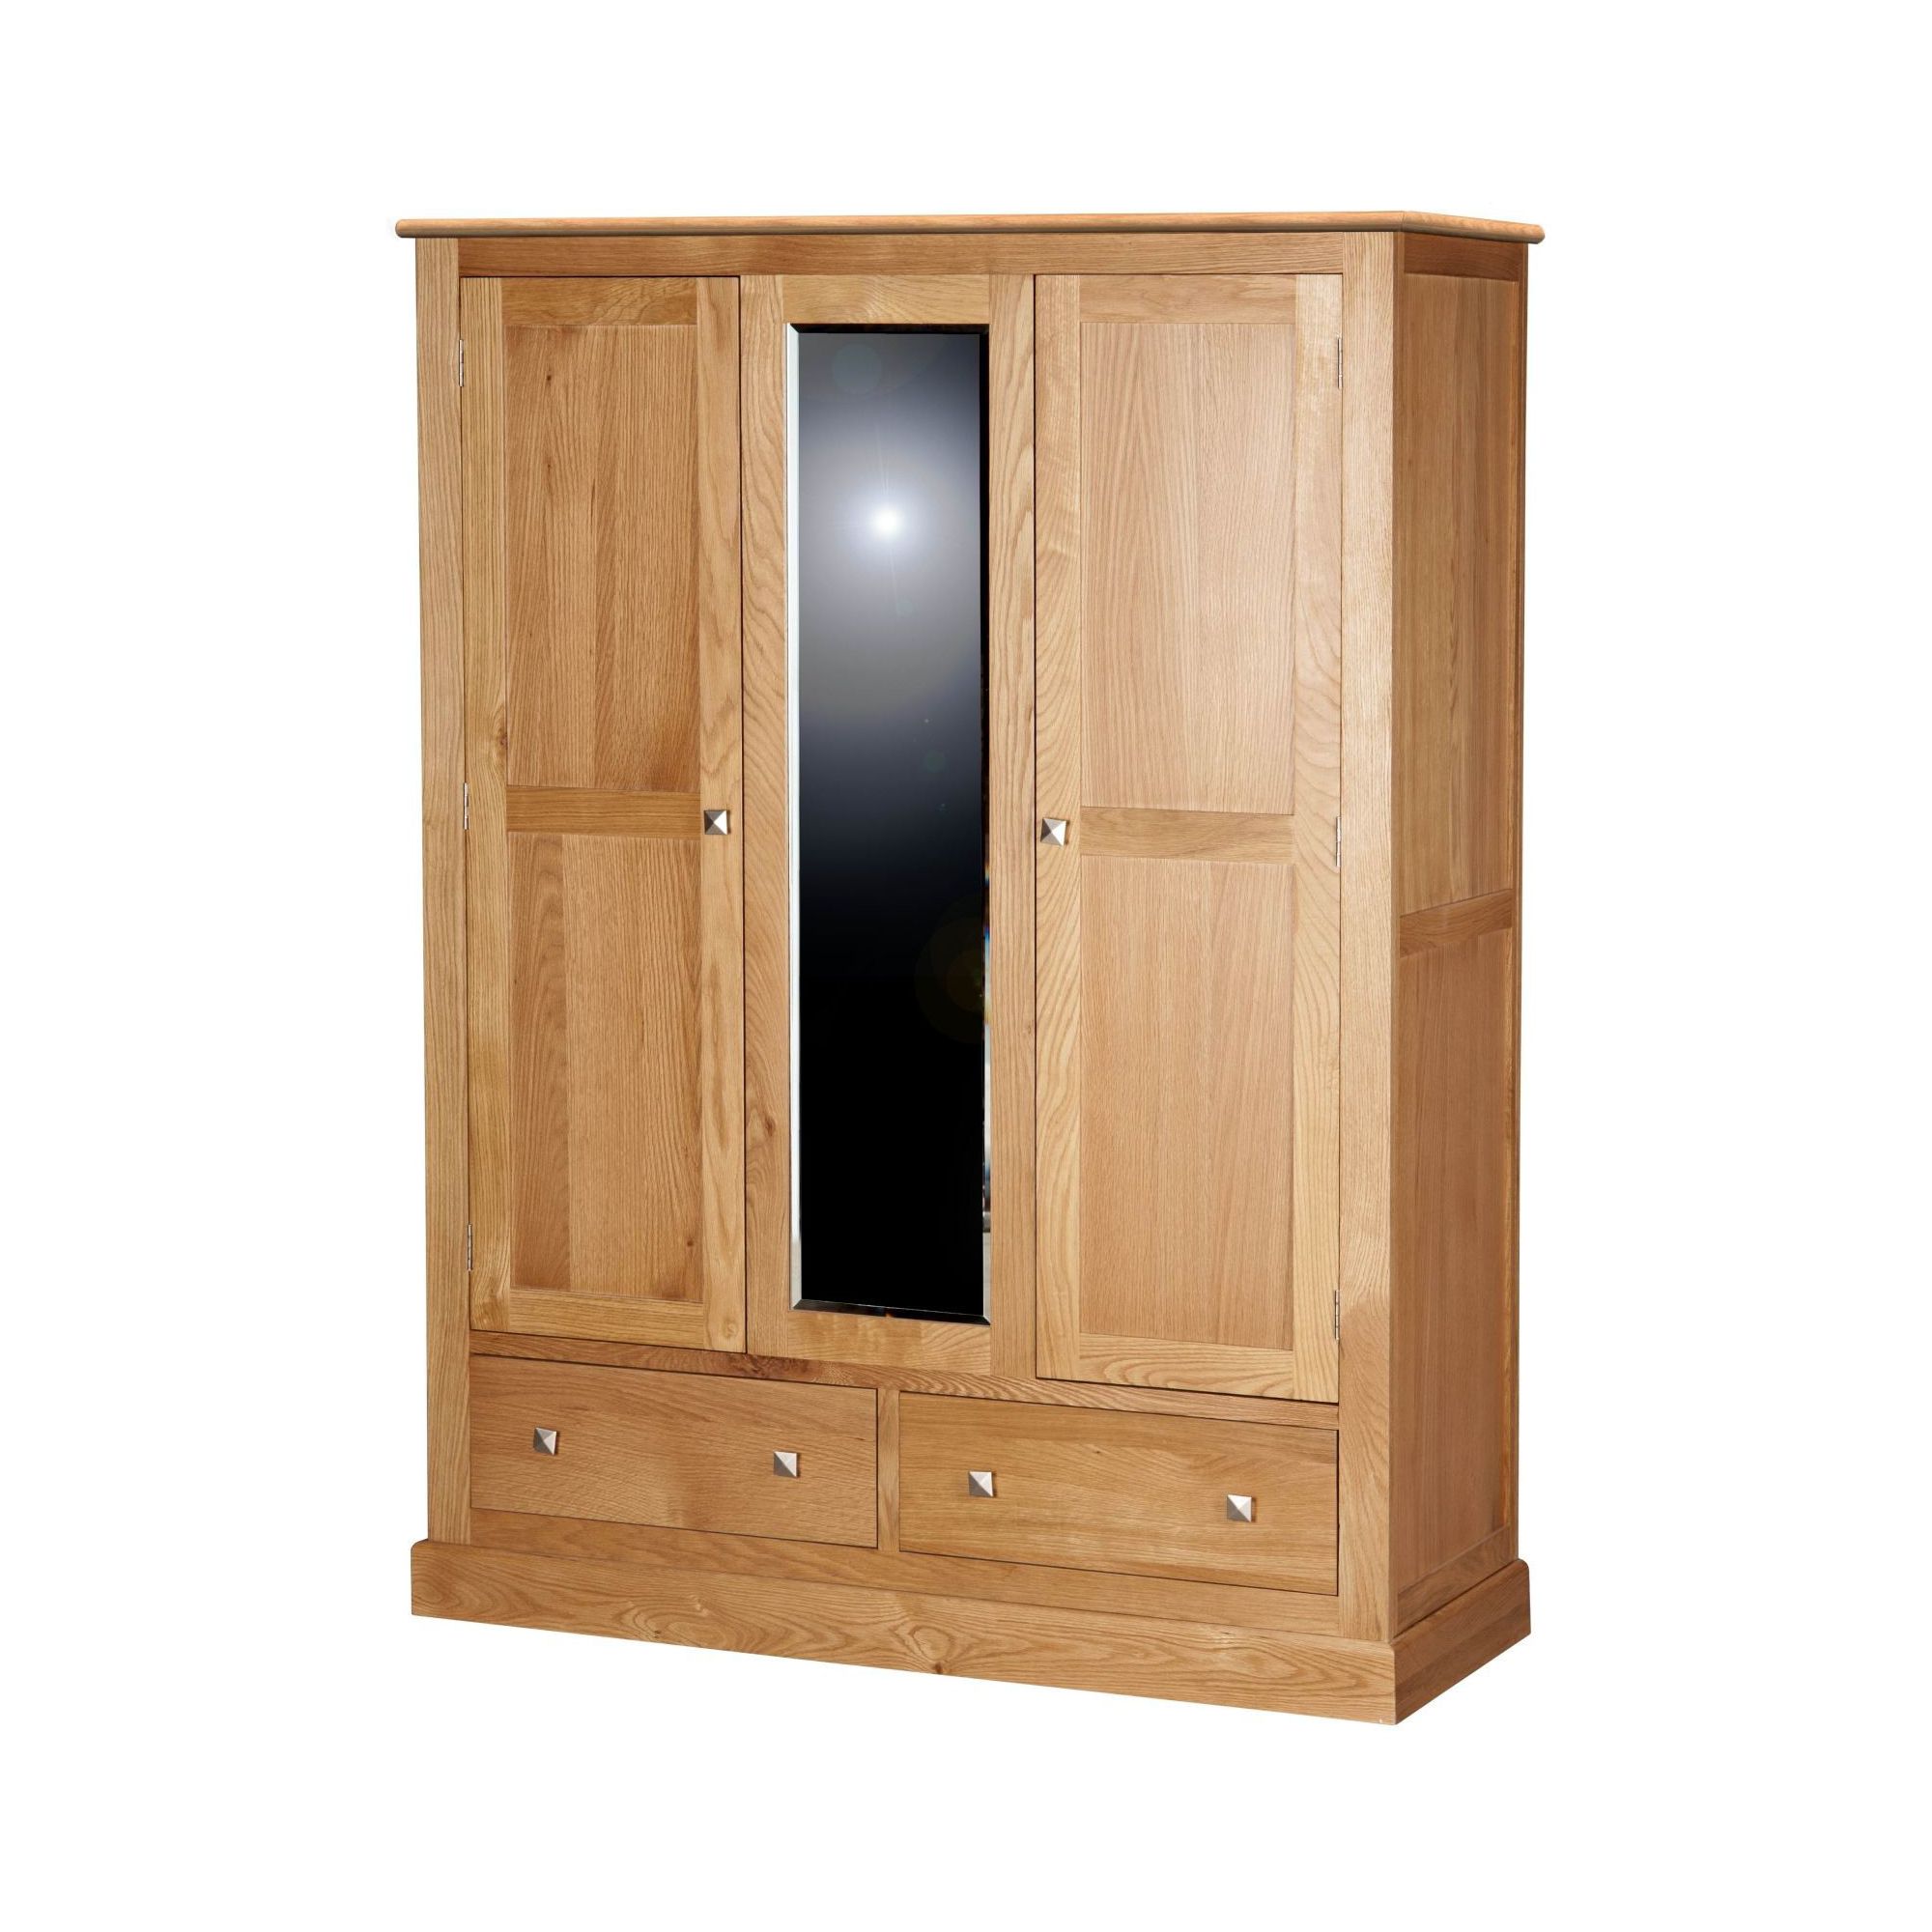 Kelburn Furniture Pitkin Oak Triple Wardrobe at Tesco Direct